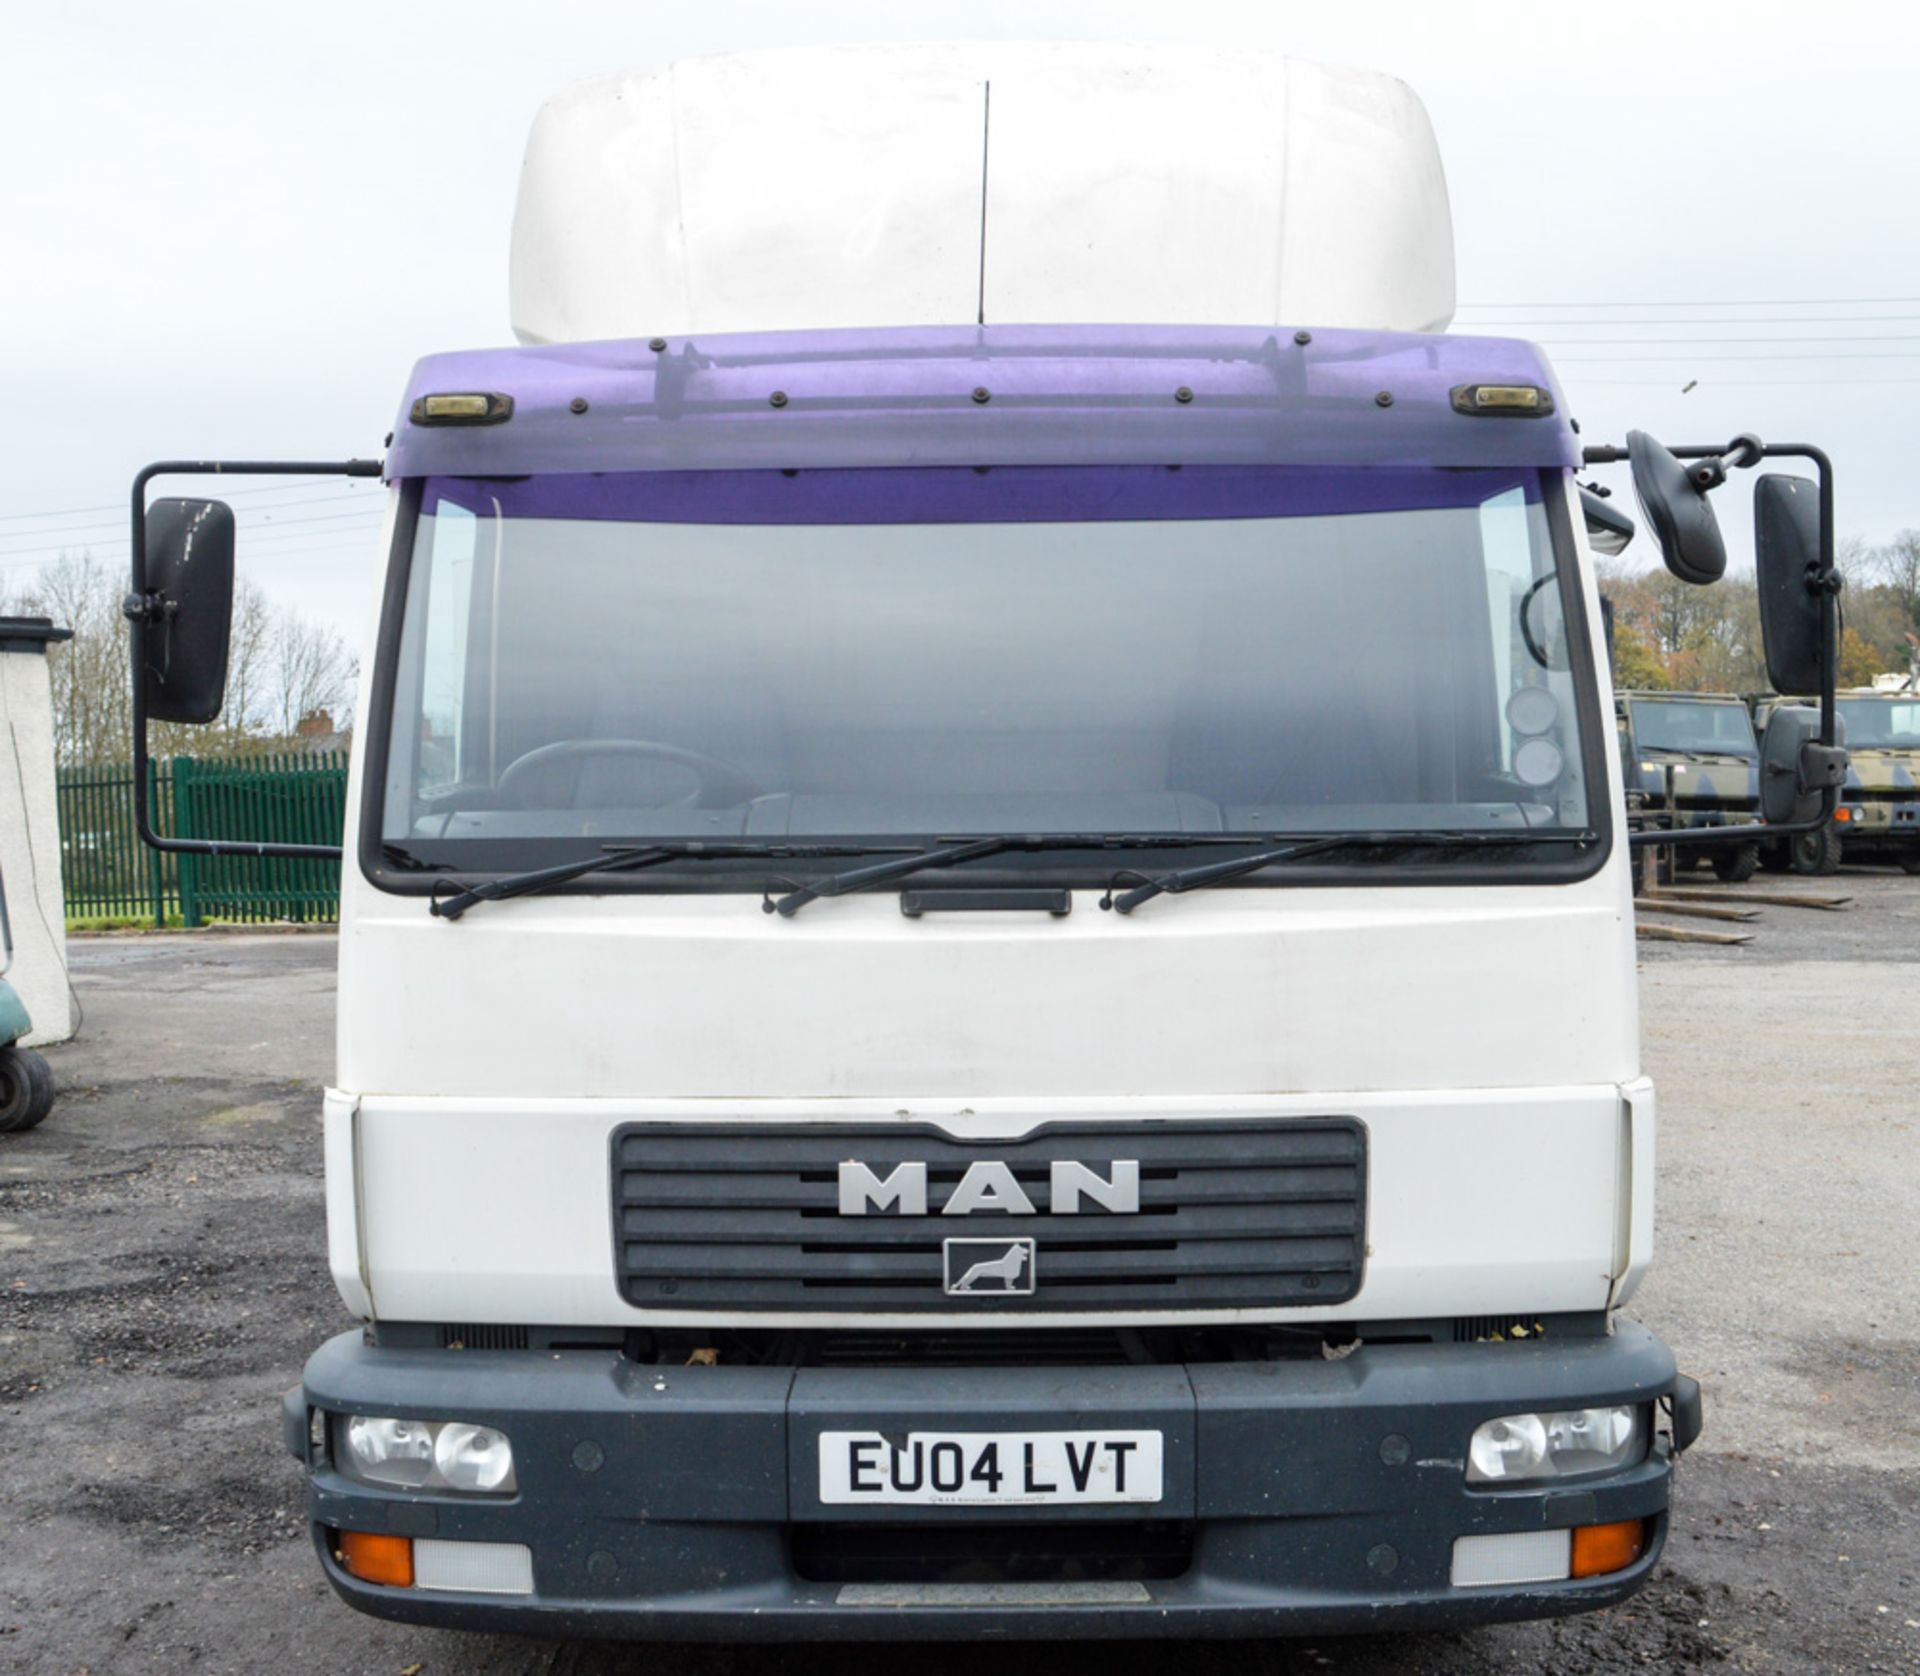 MAN LE 10 220 10 tonne flat bed lorry Registration Number: EU04 LVT Date of Registration: 26/04/2004 - Image 5 of 8